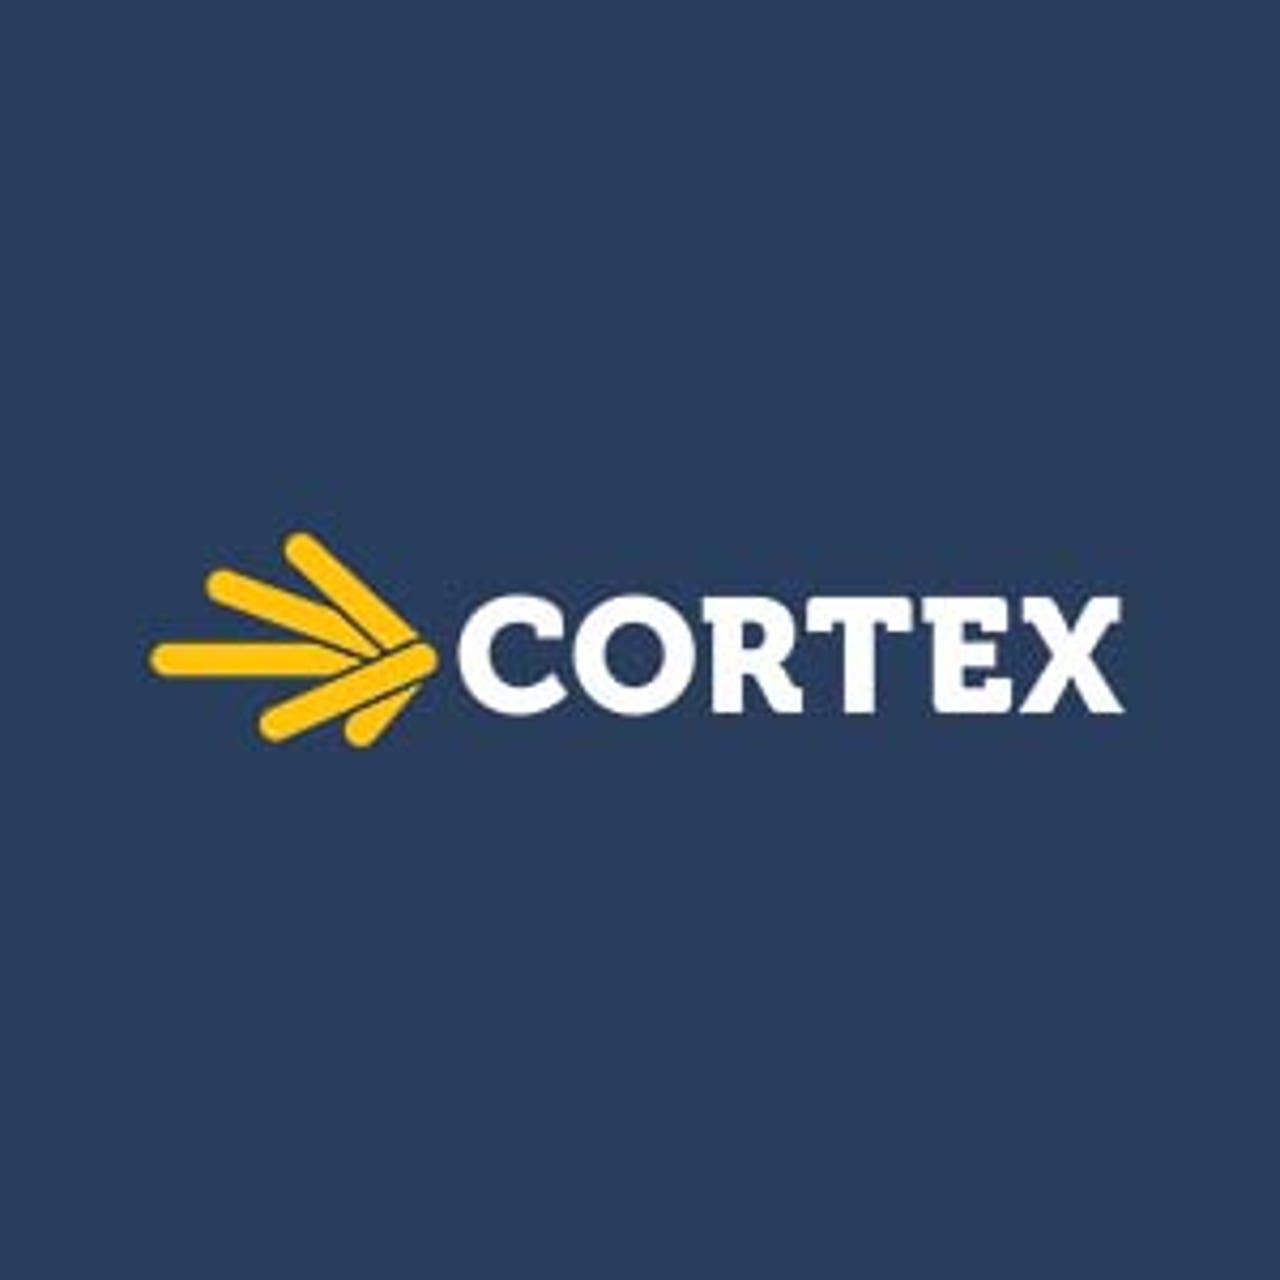 cortex-logo-blue